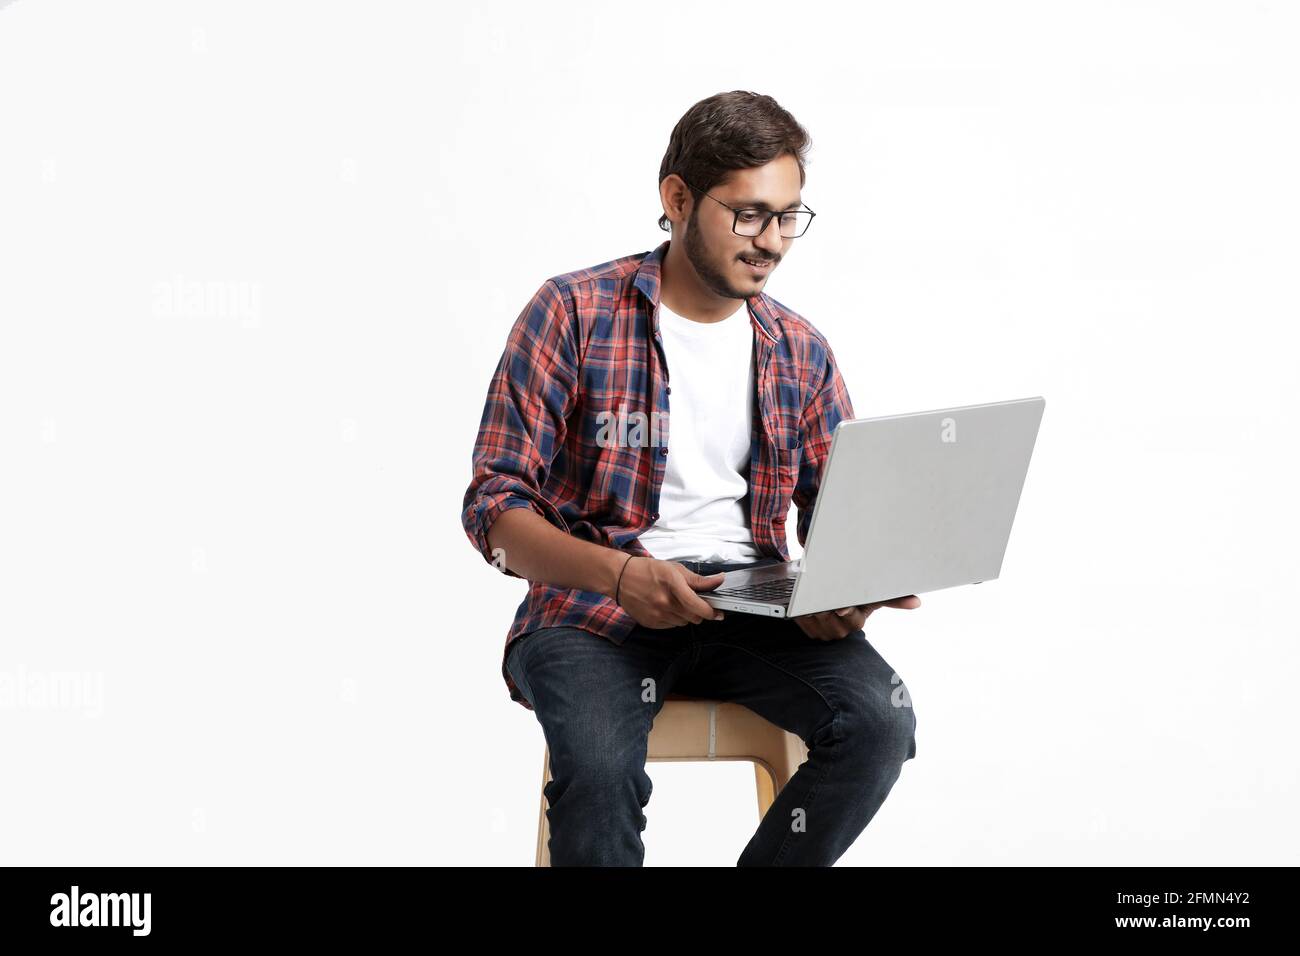 Indische College-Student mit Laptop auf weißem Hintergrund. Stockfoto